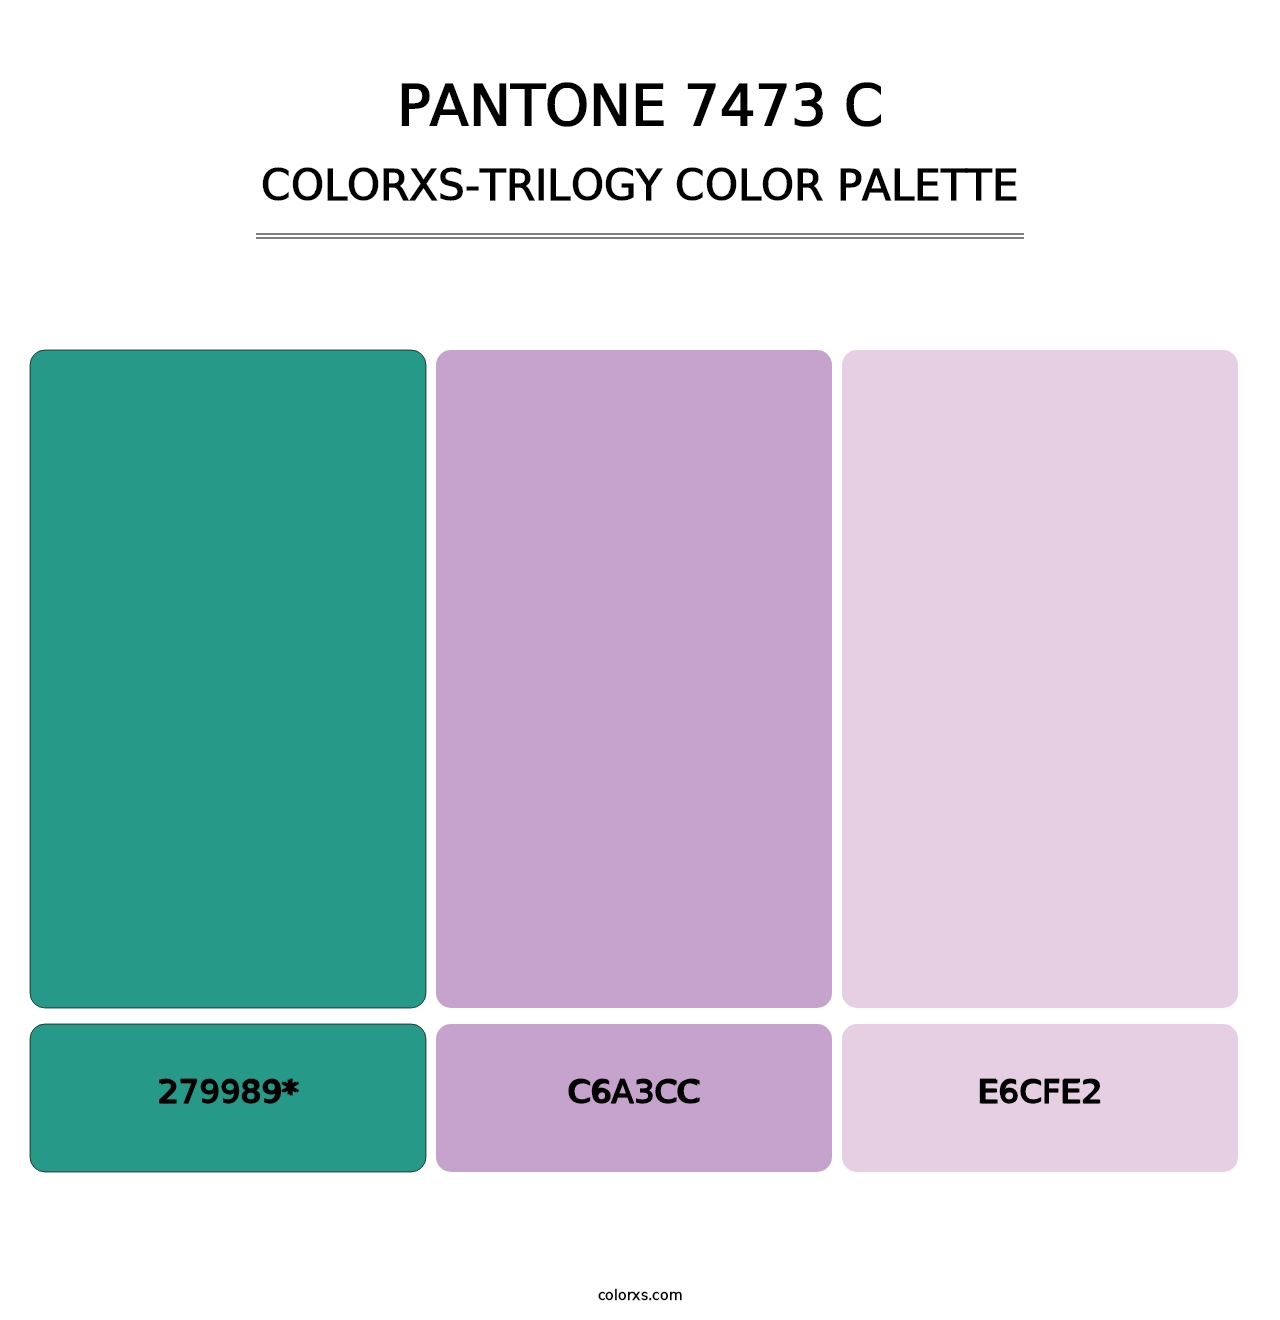 PANTONE 7473 C - Colorxs Trilogy Palette